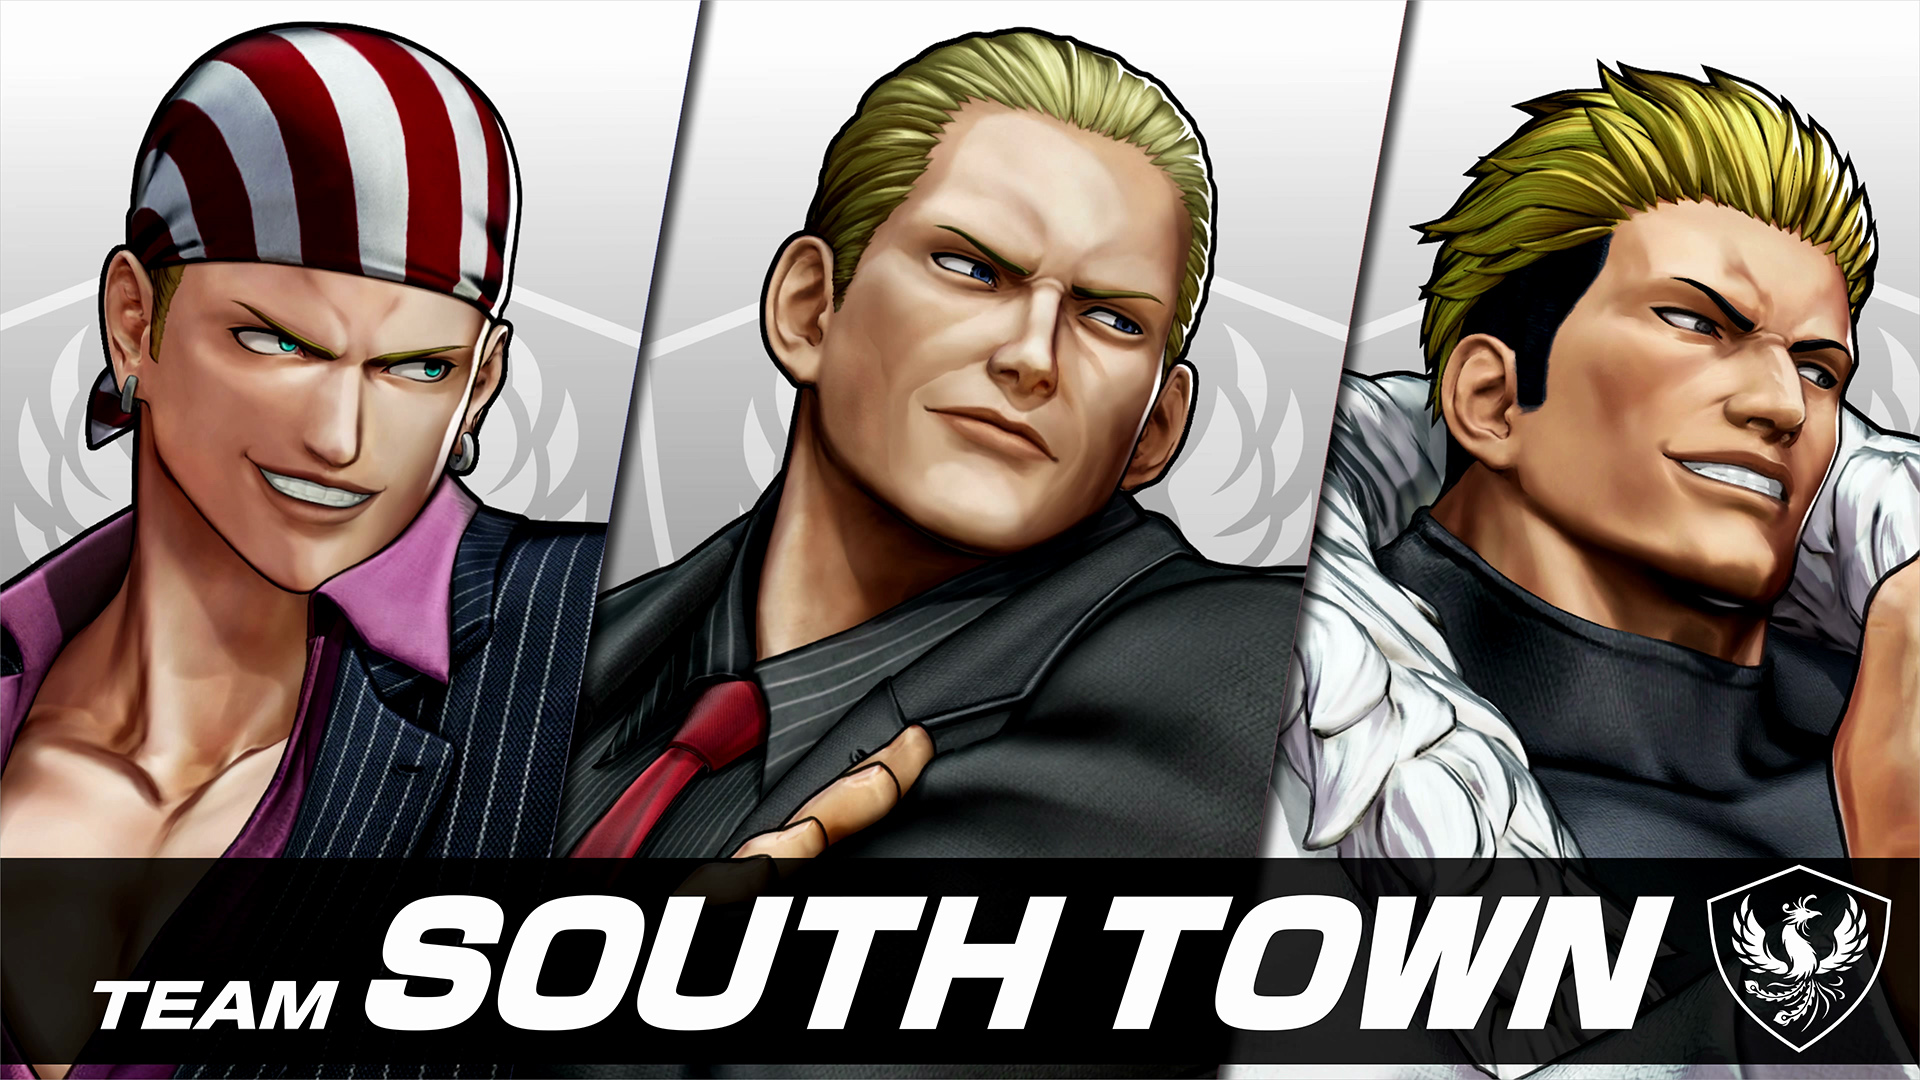 《拳皇 15》 DLC 第一弹角色包「南镇队」将在 5 月 17 日推出